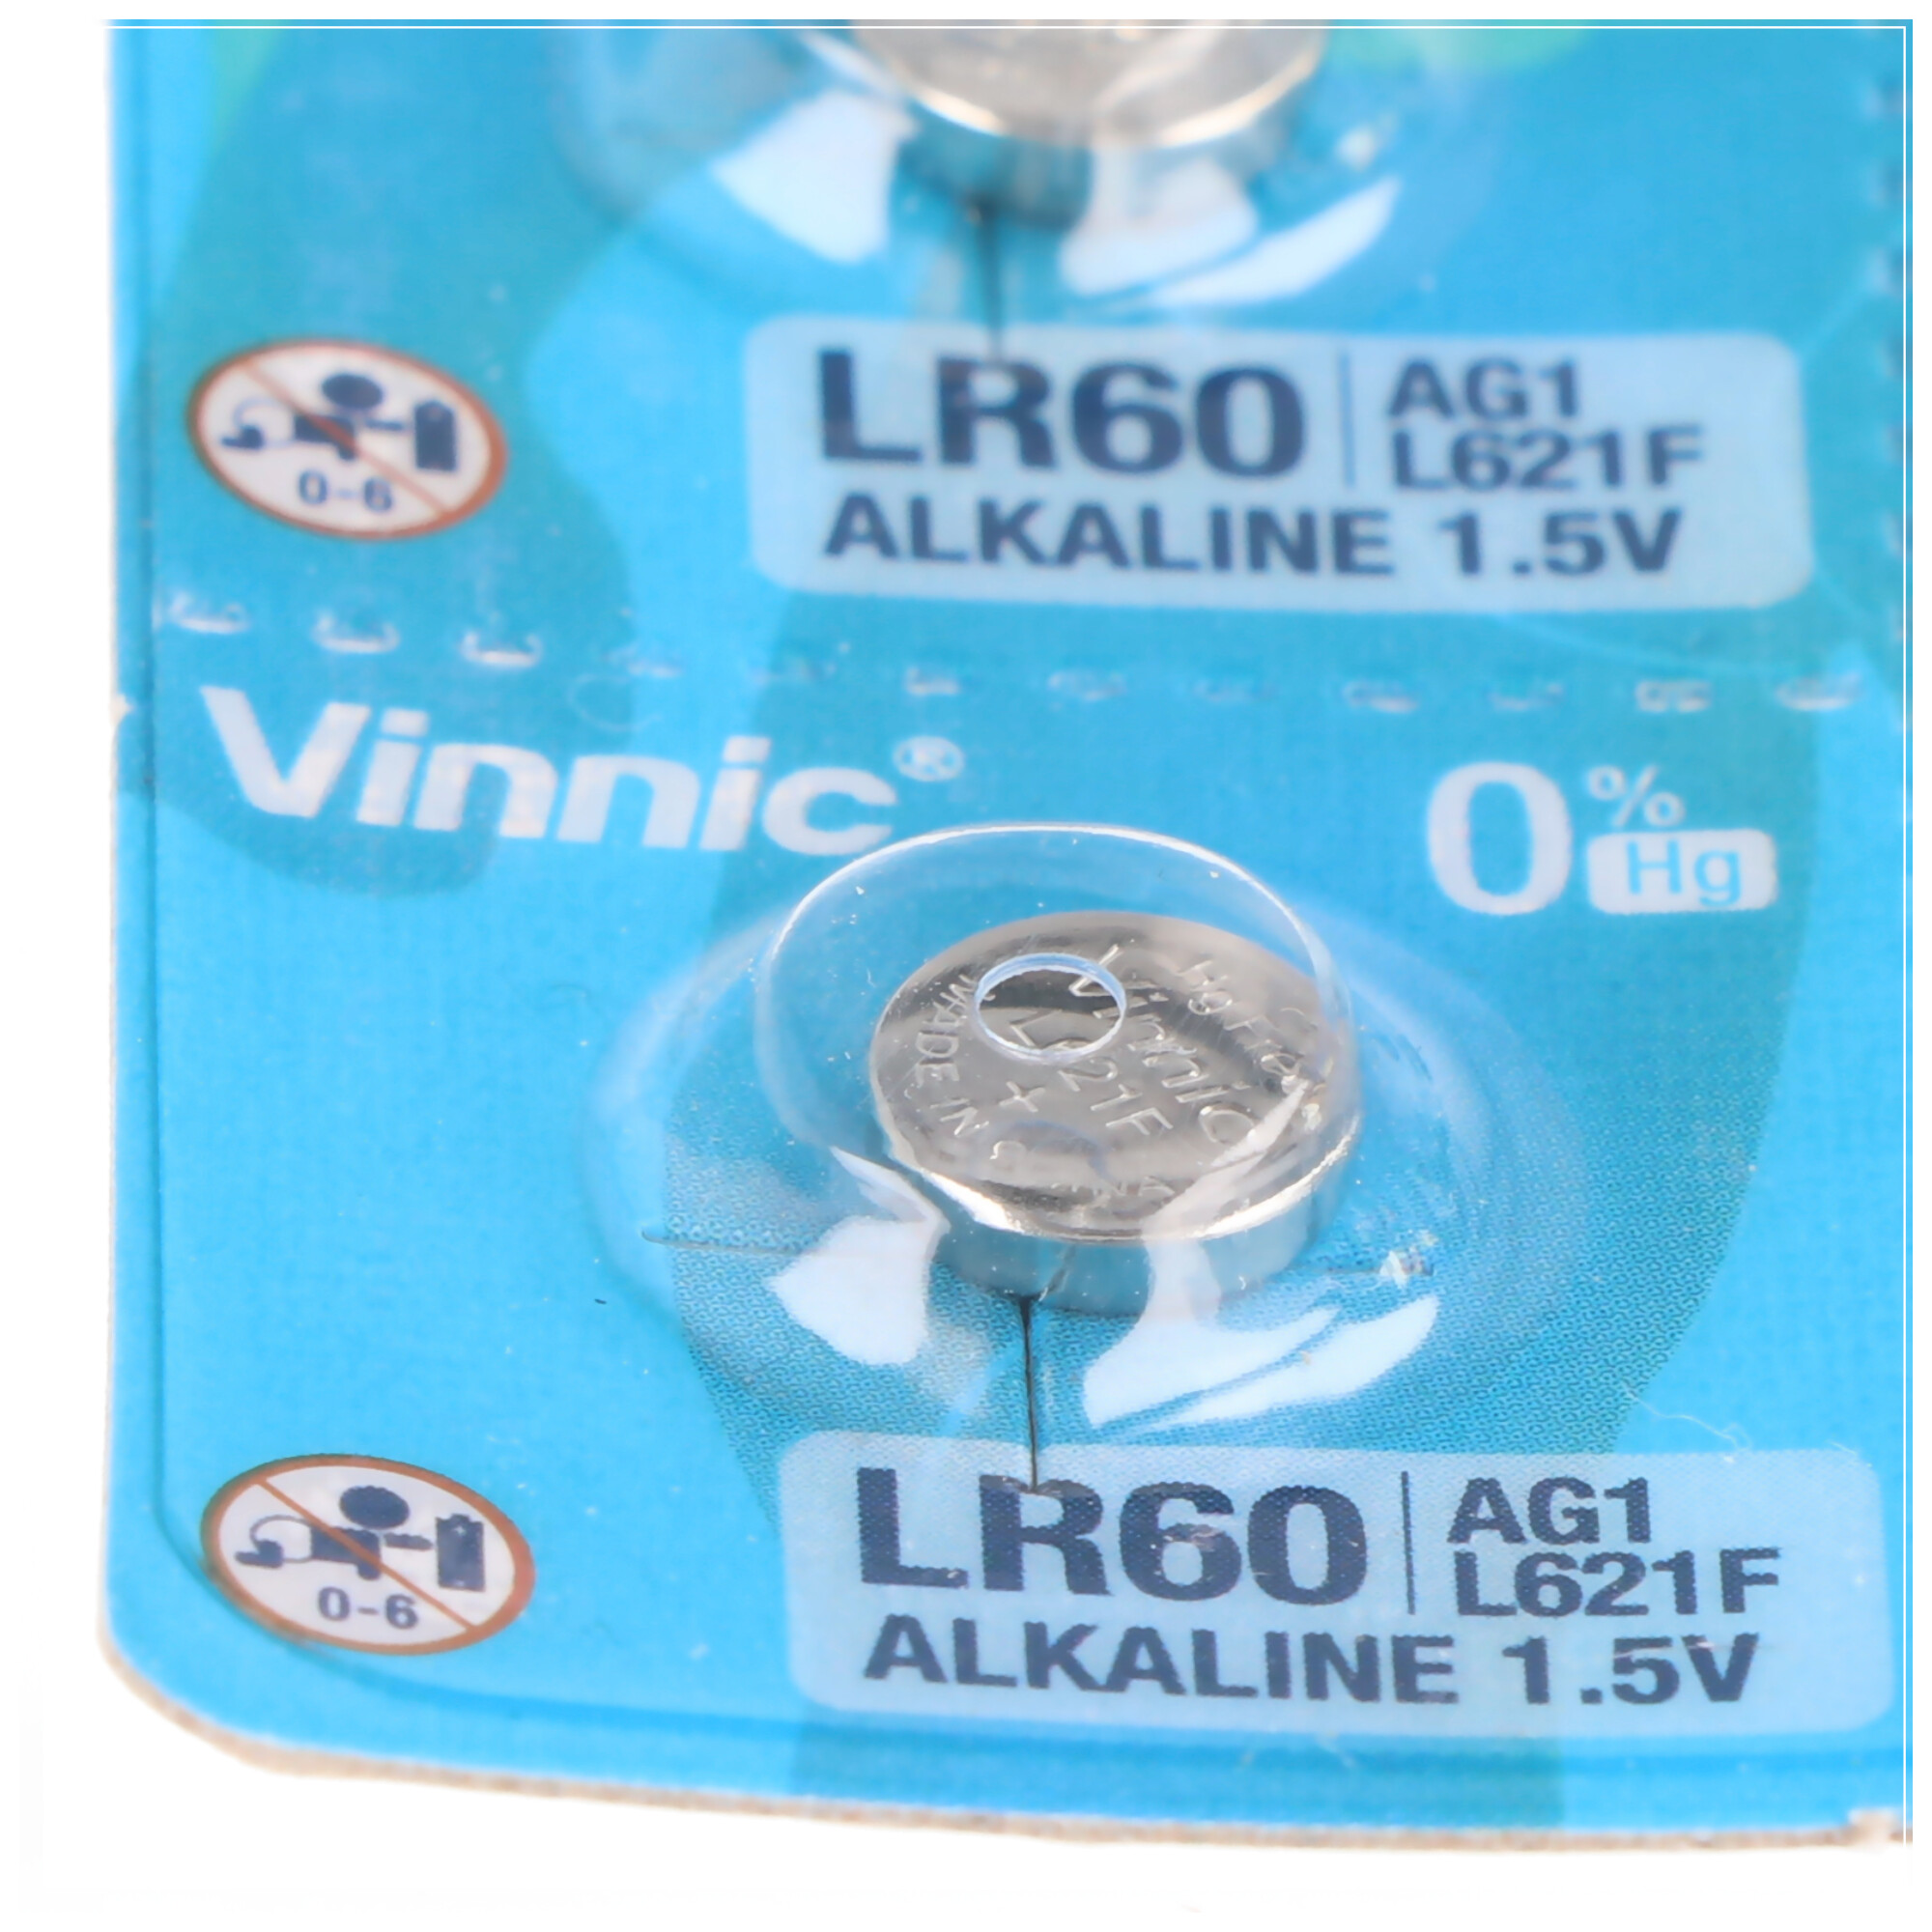 10 Stück AG1 Alkaline-Einweg-Batterie Type G1, AG1, L621, LR60, 6,8x6,8x2,15mm